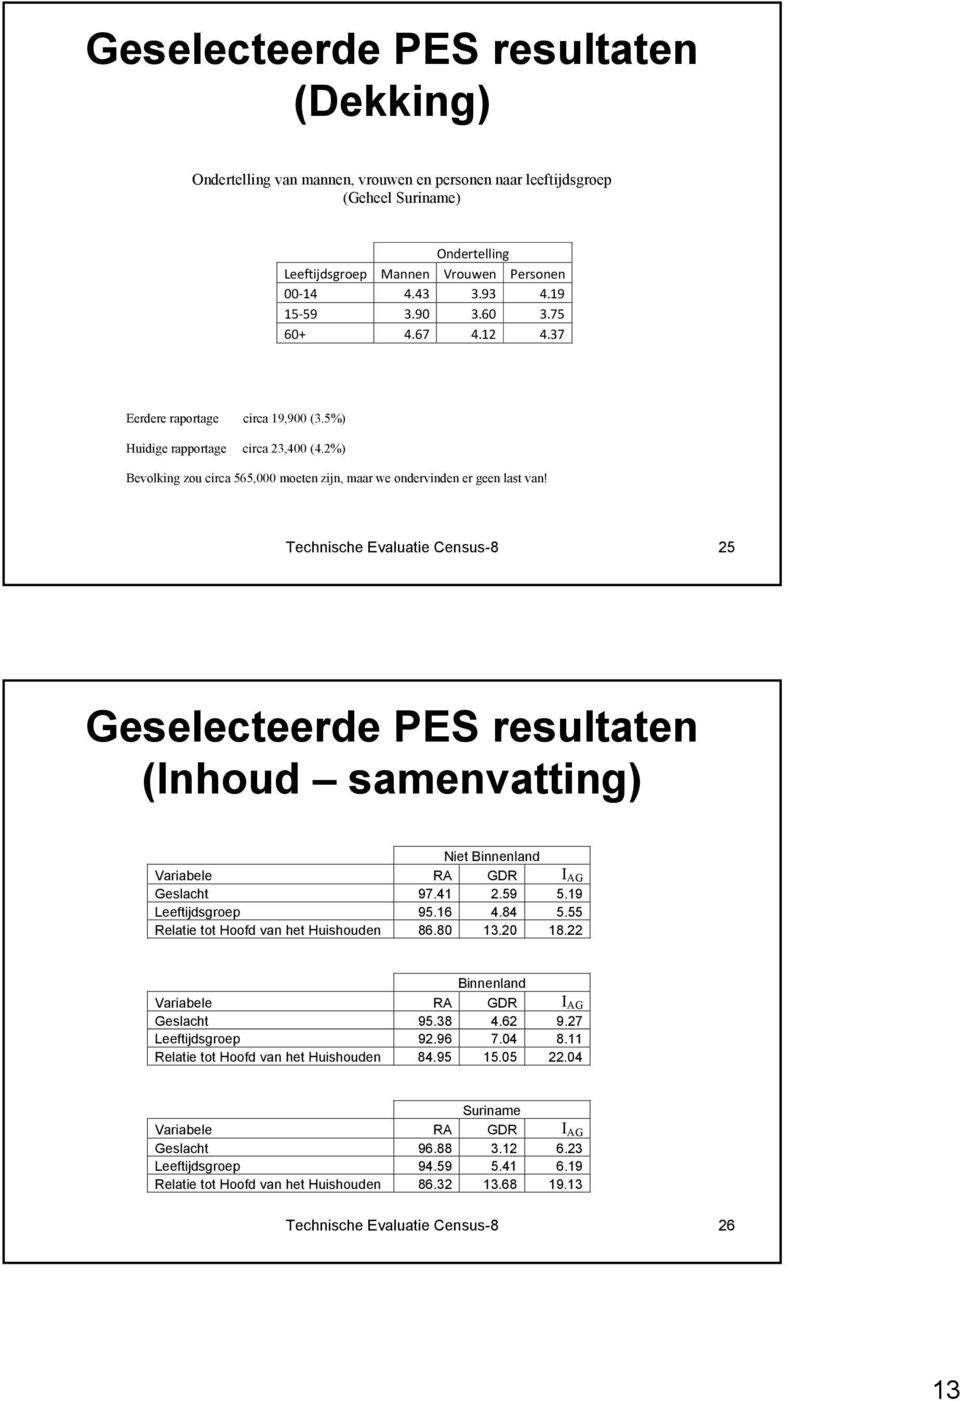 Technische Evaluatie Census-8 25 Geselecteerde PES resultaten (Inhoud samenvatting) Niet Binnenland Variabele RA GDR I AG Geslacht 97.41 2.59 5.19 Leeftijdsgroep 95.16 4.84 5.